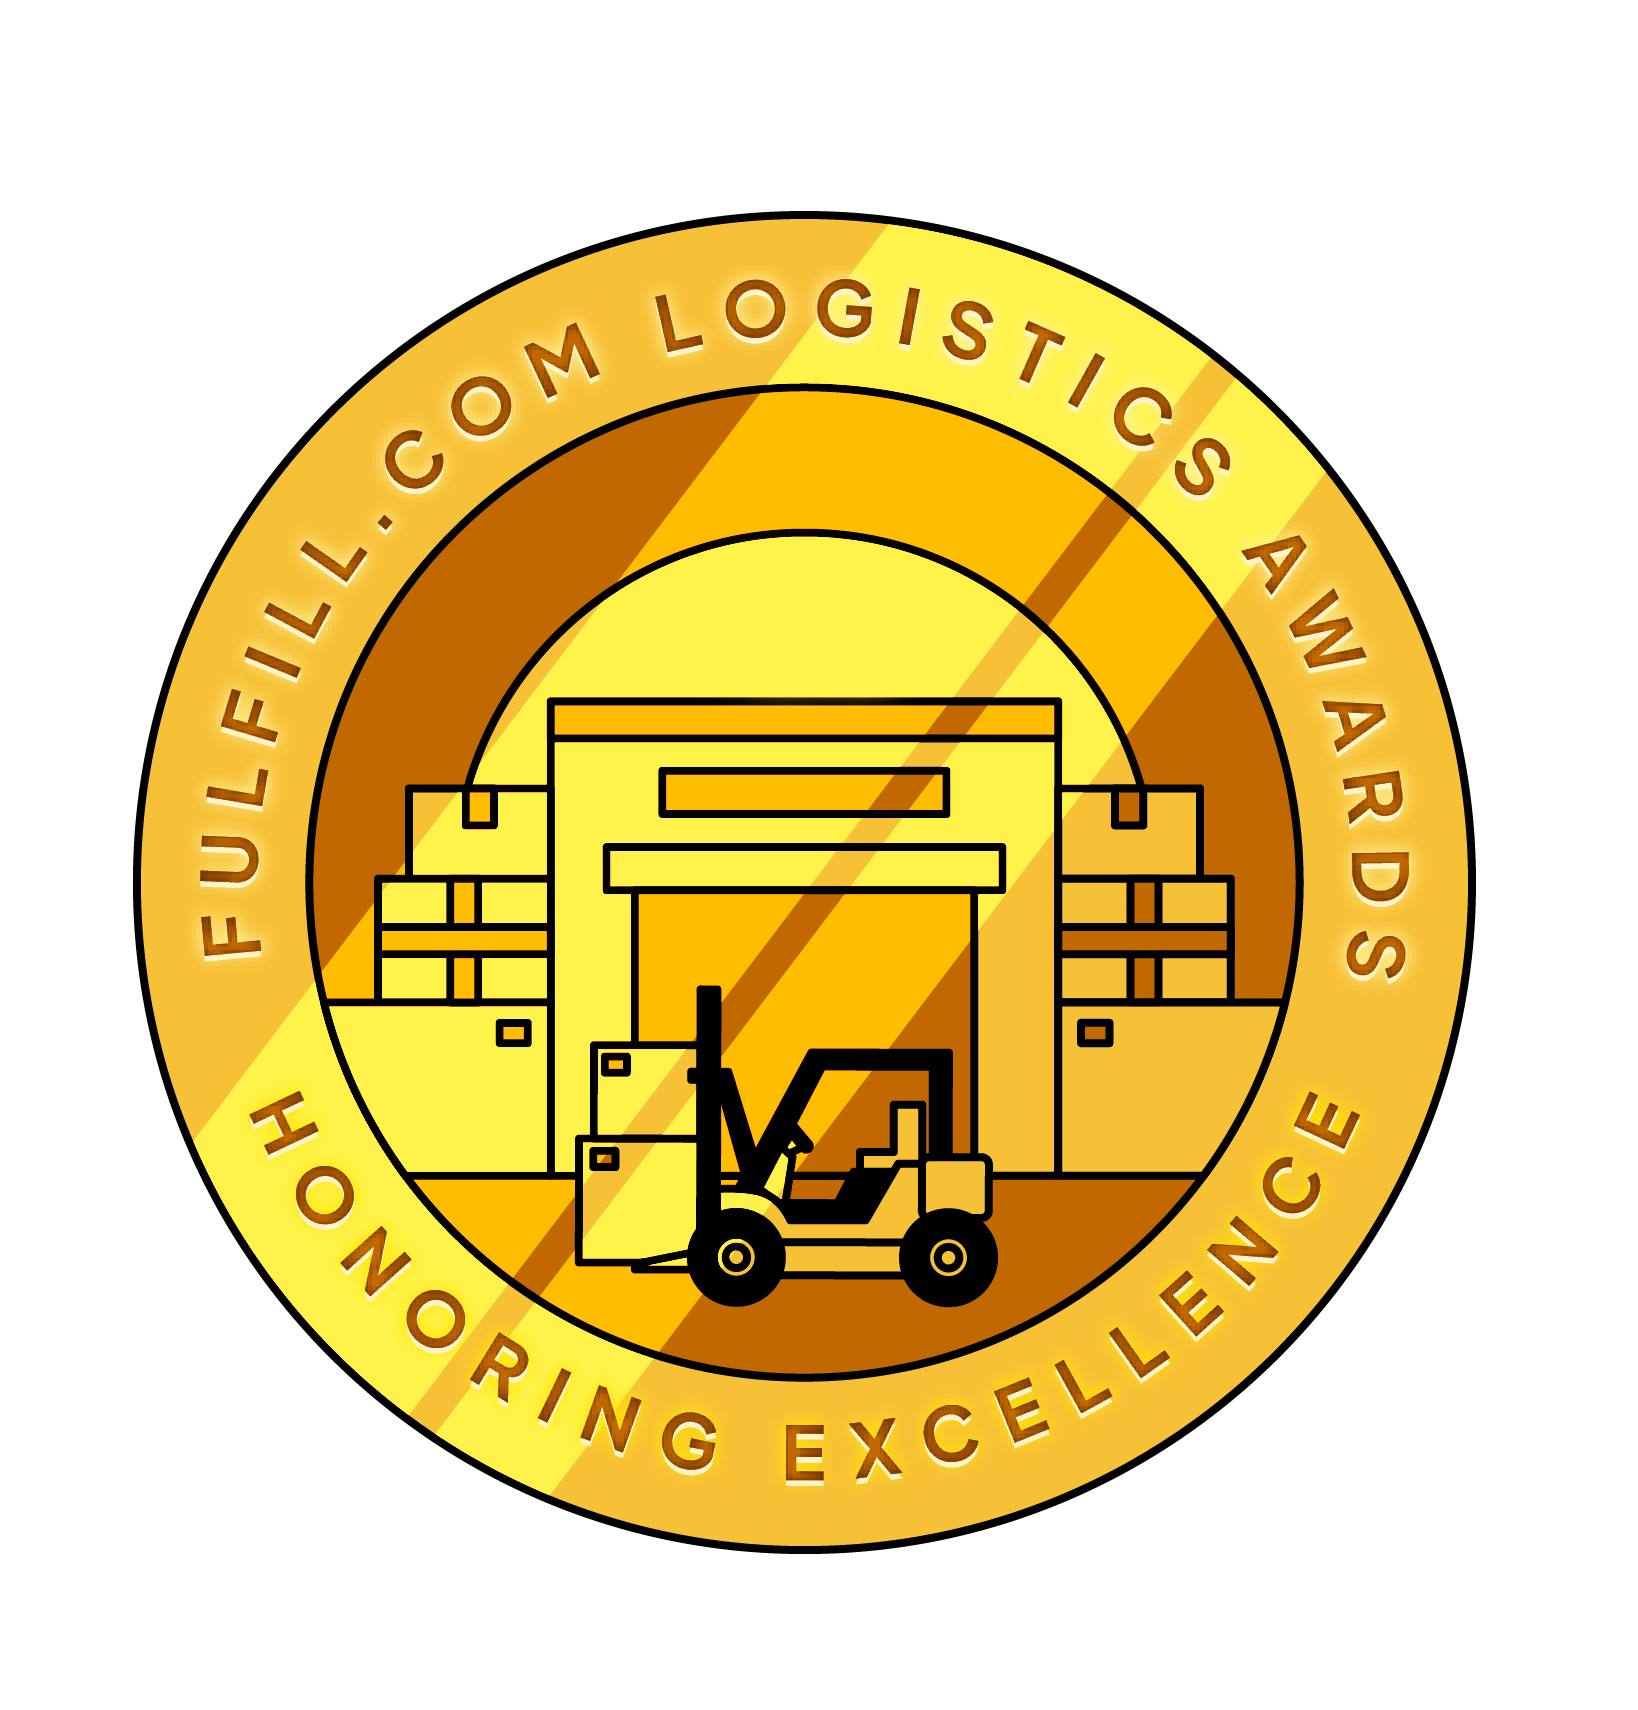 Logistica ecommerce, Logistica e-commerce, Ecommerce Logistic Italy, E-commerce Logistic Italy